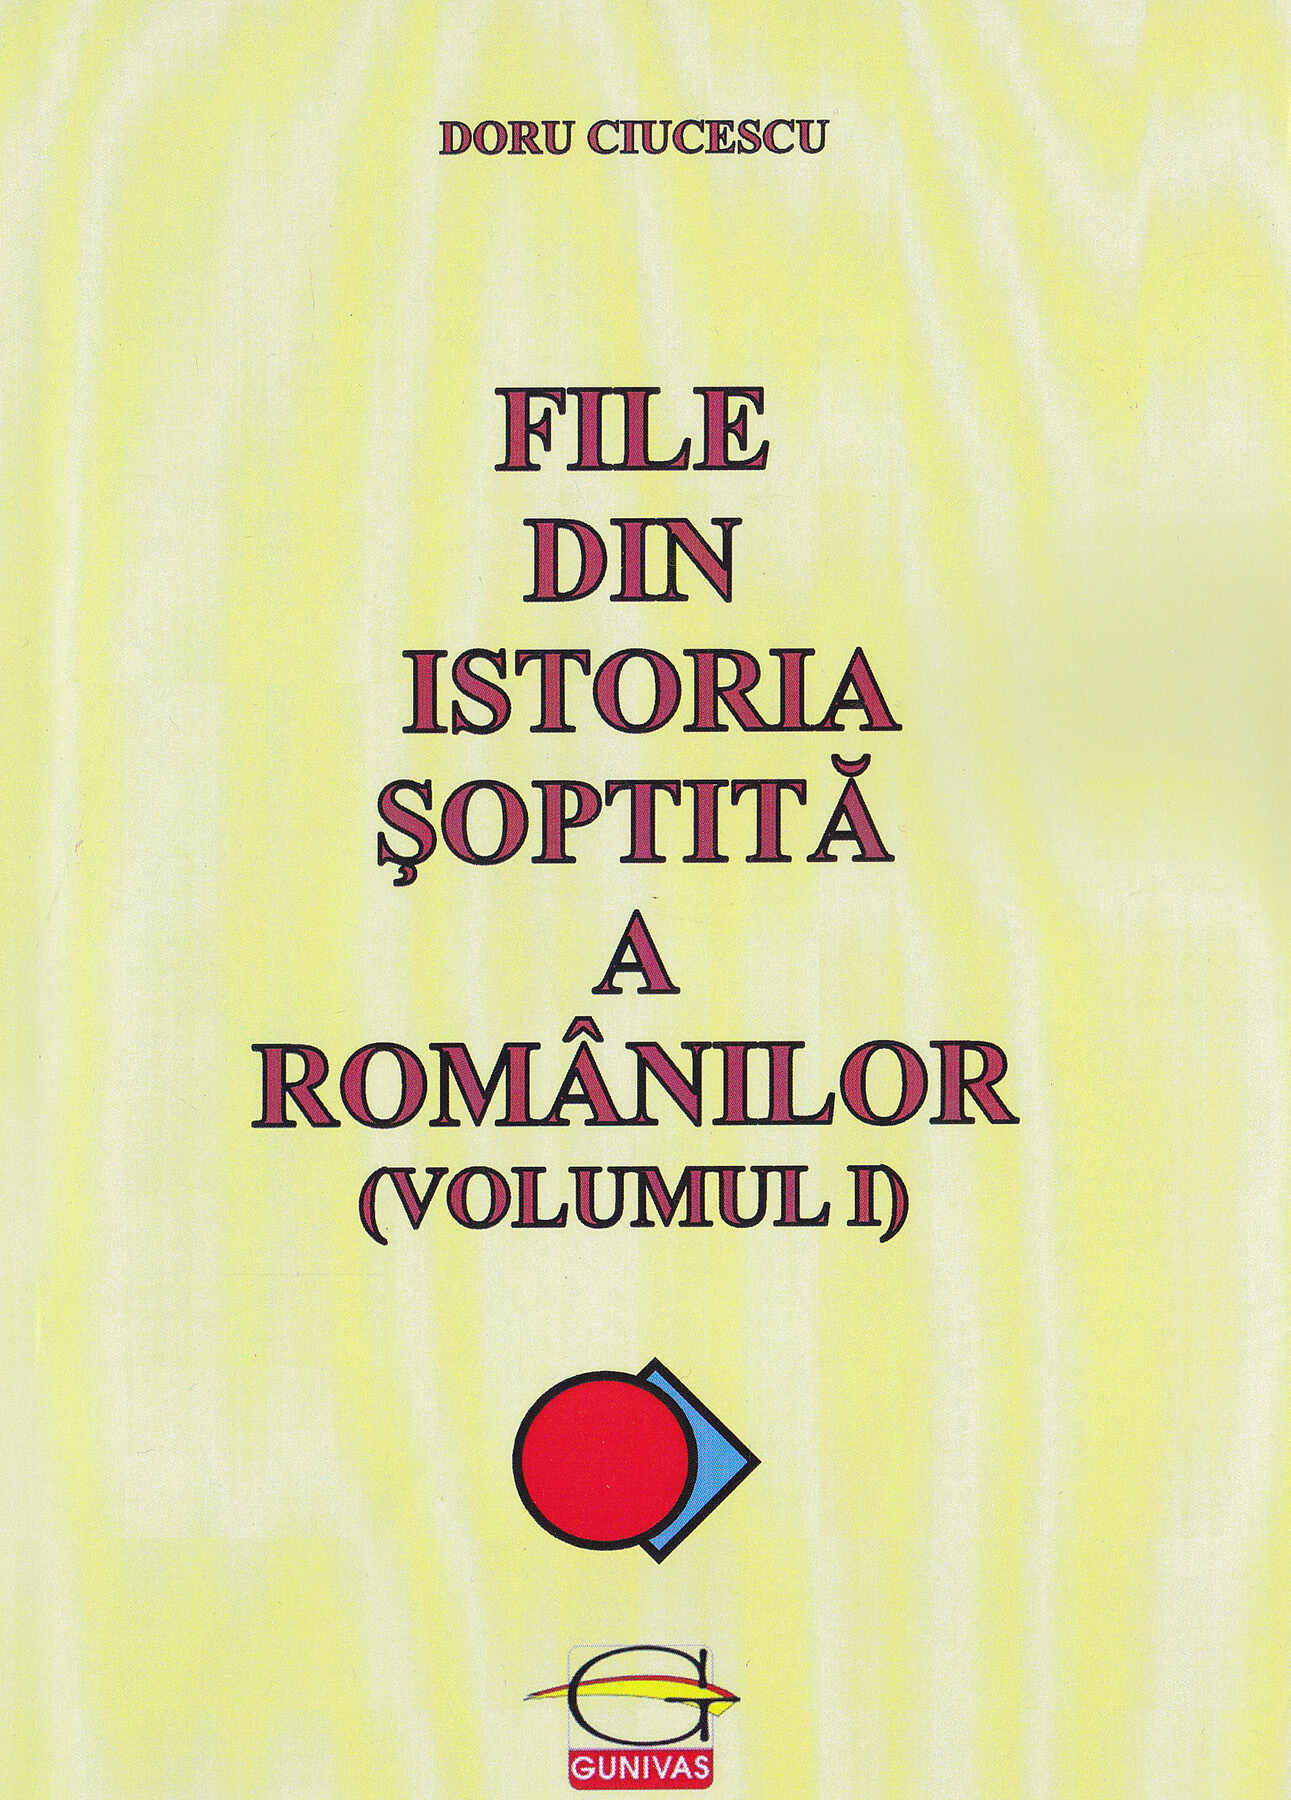 File din istoria soptita a romanilor (Volumul 1) | Doru Ciucescu